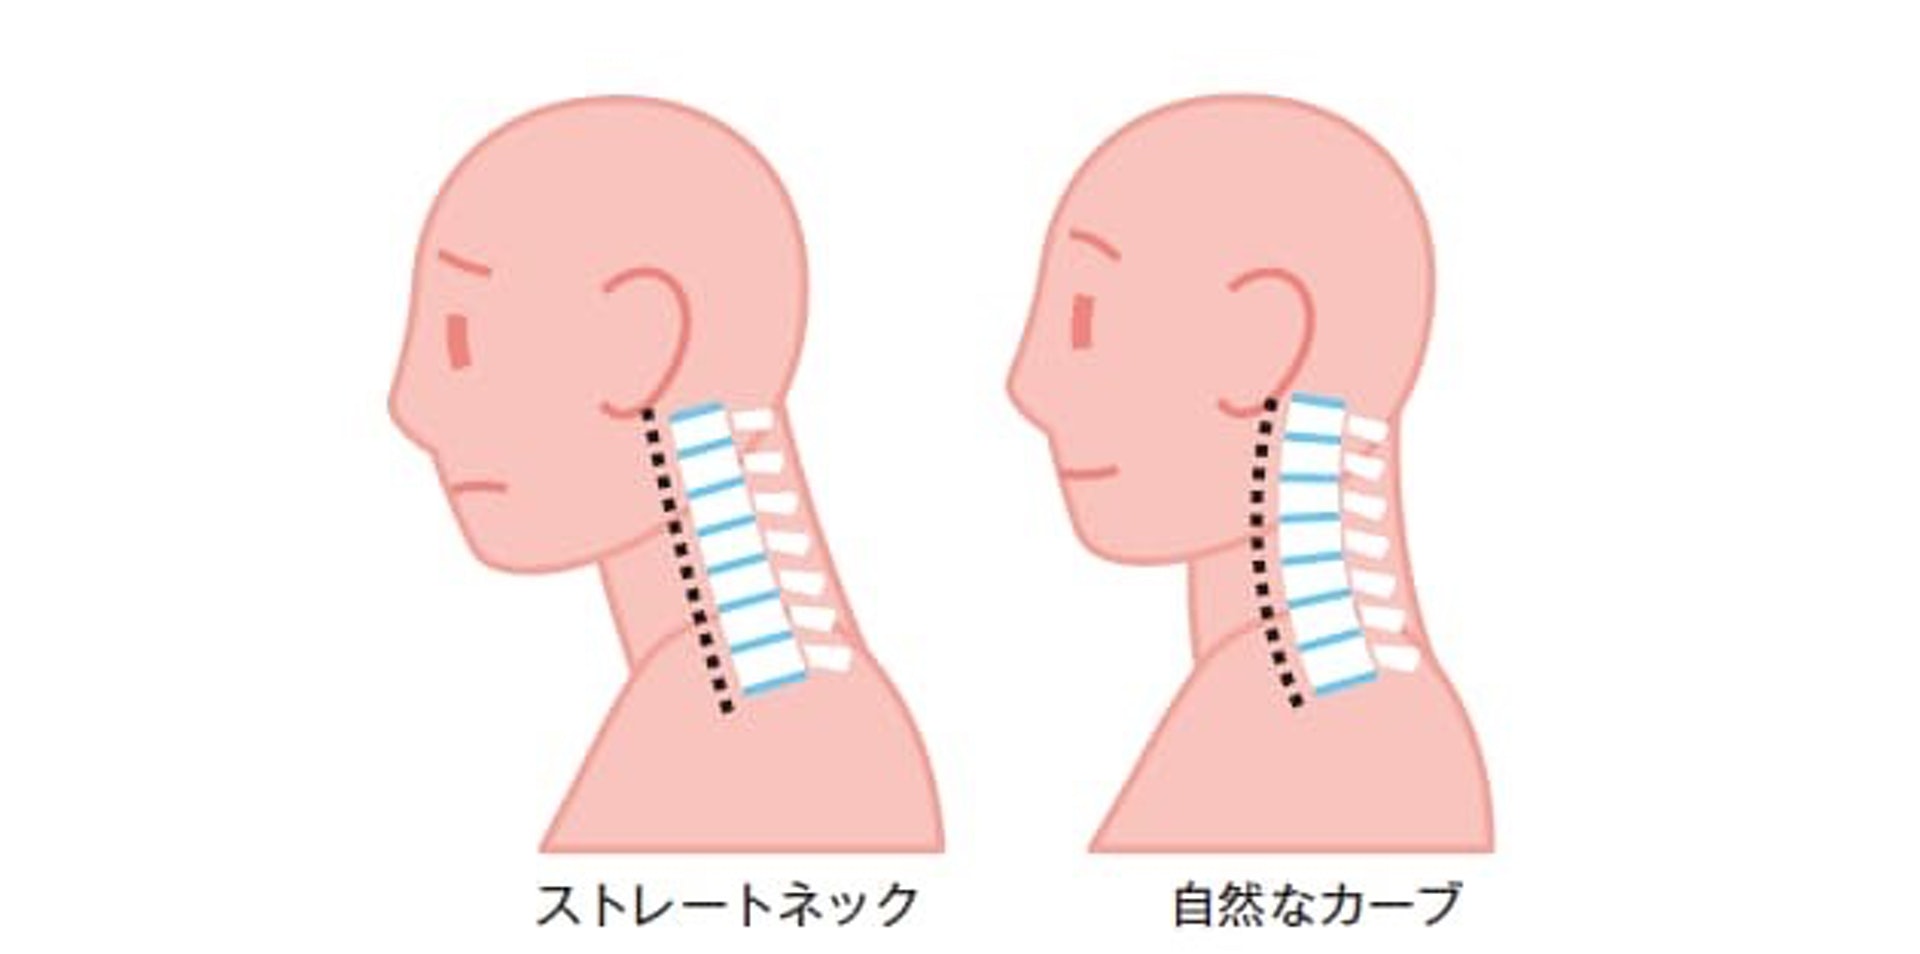 頸椎本是向前呈微微彎曲的狀態，支撐着上方的頭部（圖右），但假如長期駝背看電腦，就會導致頸椎錯位變成「直頸」（圖左）。（NIKKEI STYLE）